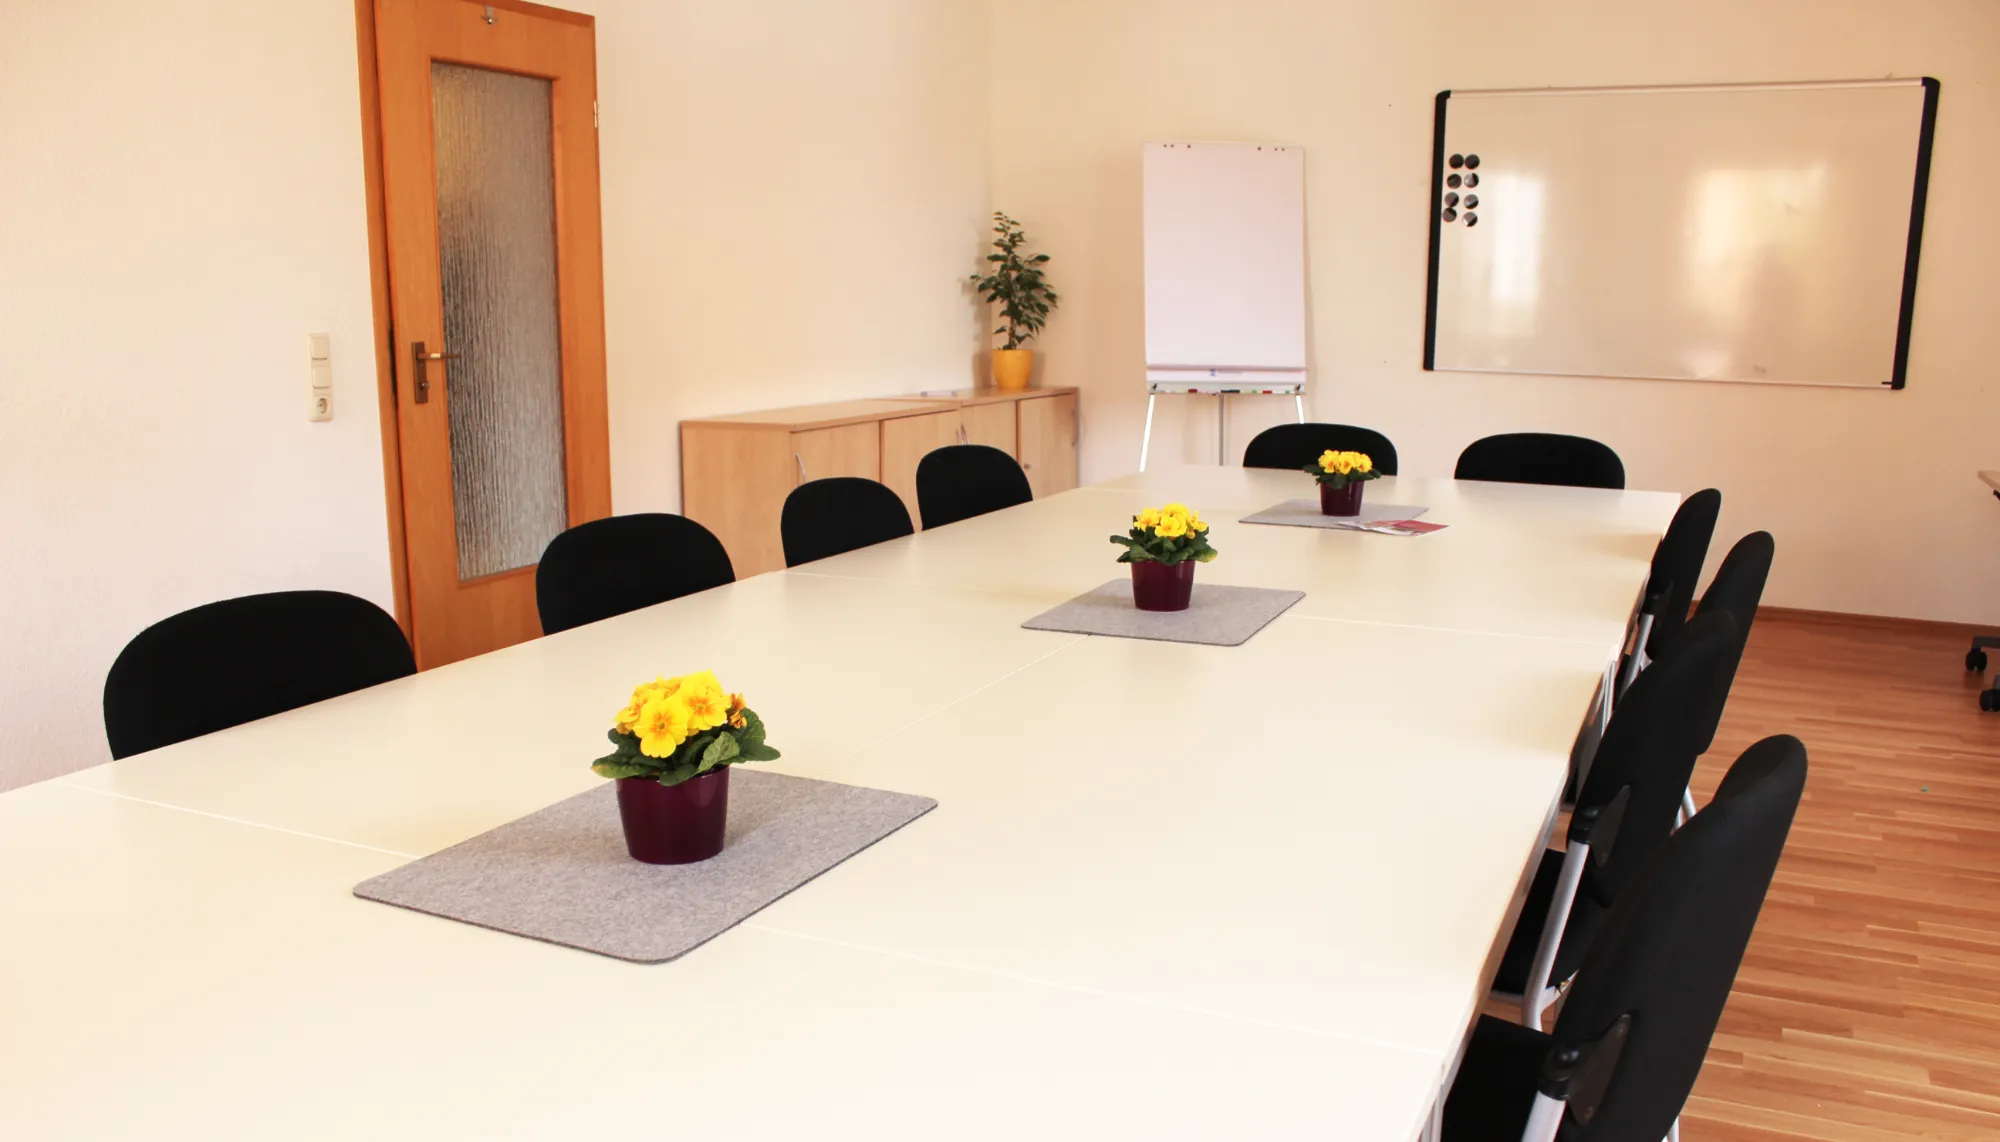 In Dannenberg haben wir neben unseren Büro- und Beratungsräumen auch einen großen Beratungsraum, den wir für Tagungen, Besprechungen und gruppen als Konferenzraum vermieten.